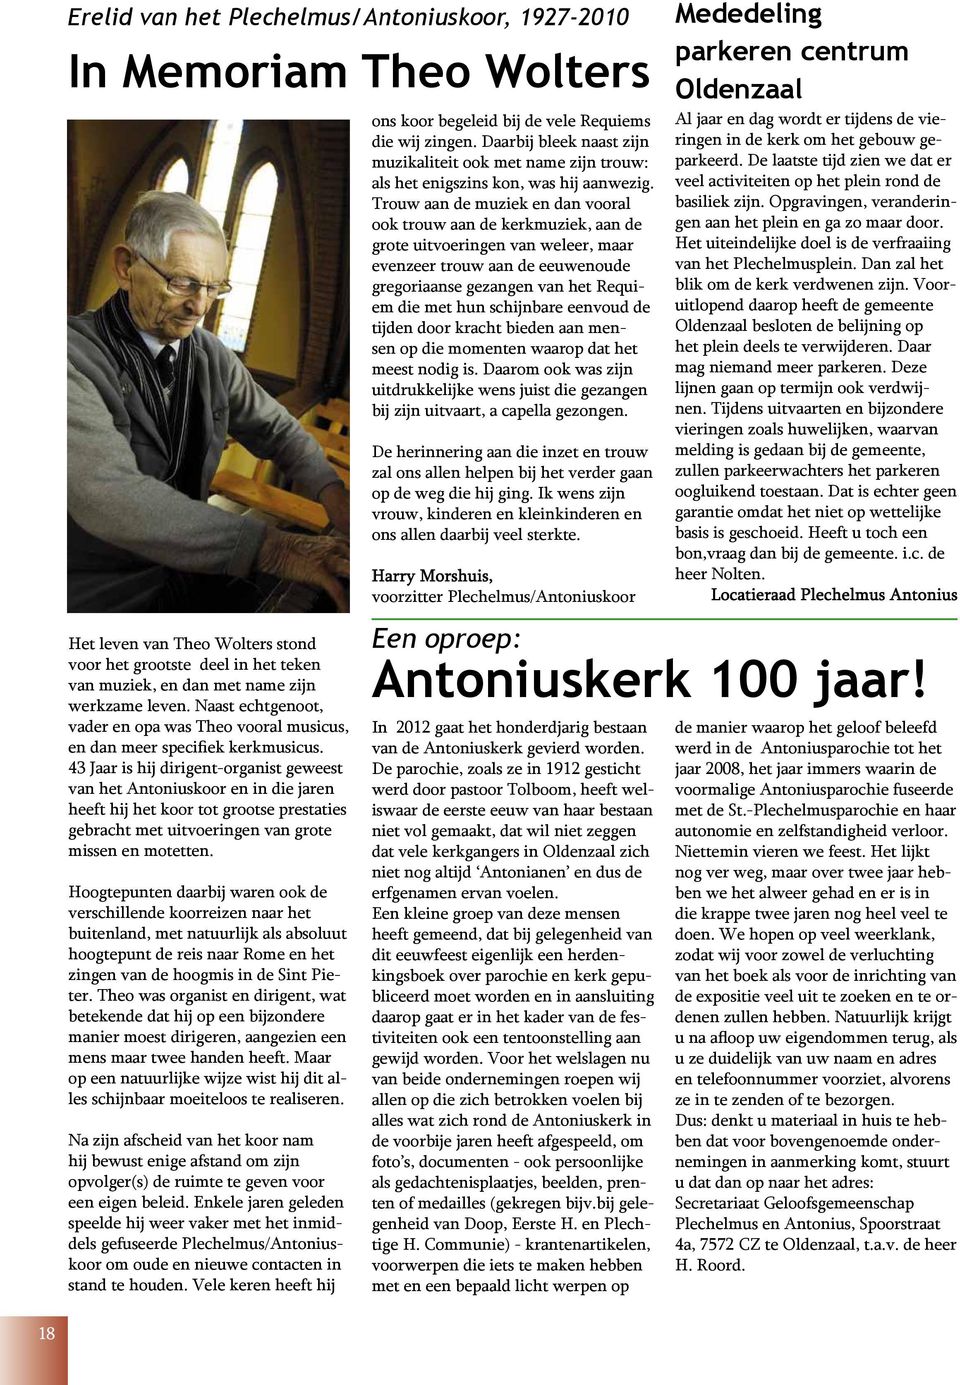 43 Jaar is hij dirigent-organist geweest van het Antoniuskoor en in die jaren heeft hij het koor tot grootse prestaties gebracht met uitvoeringen van grote missen en motetten.